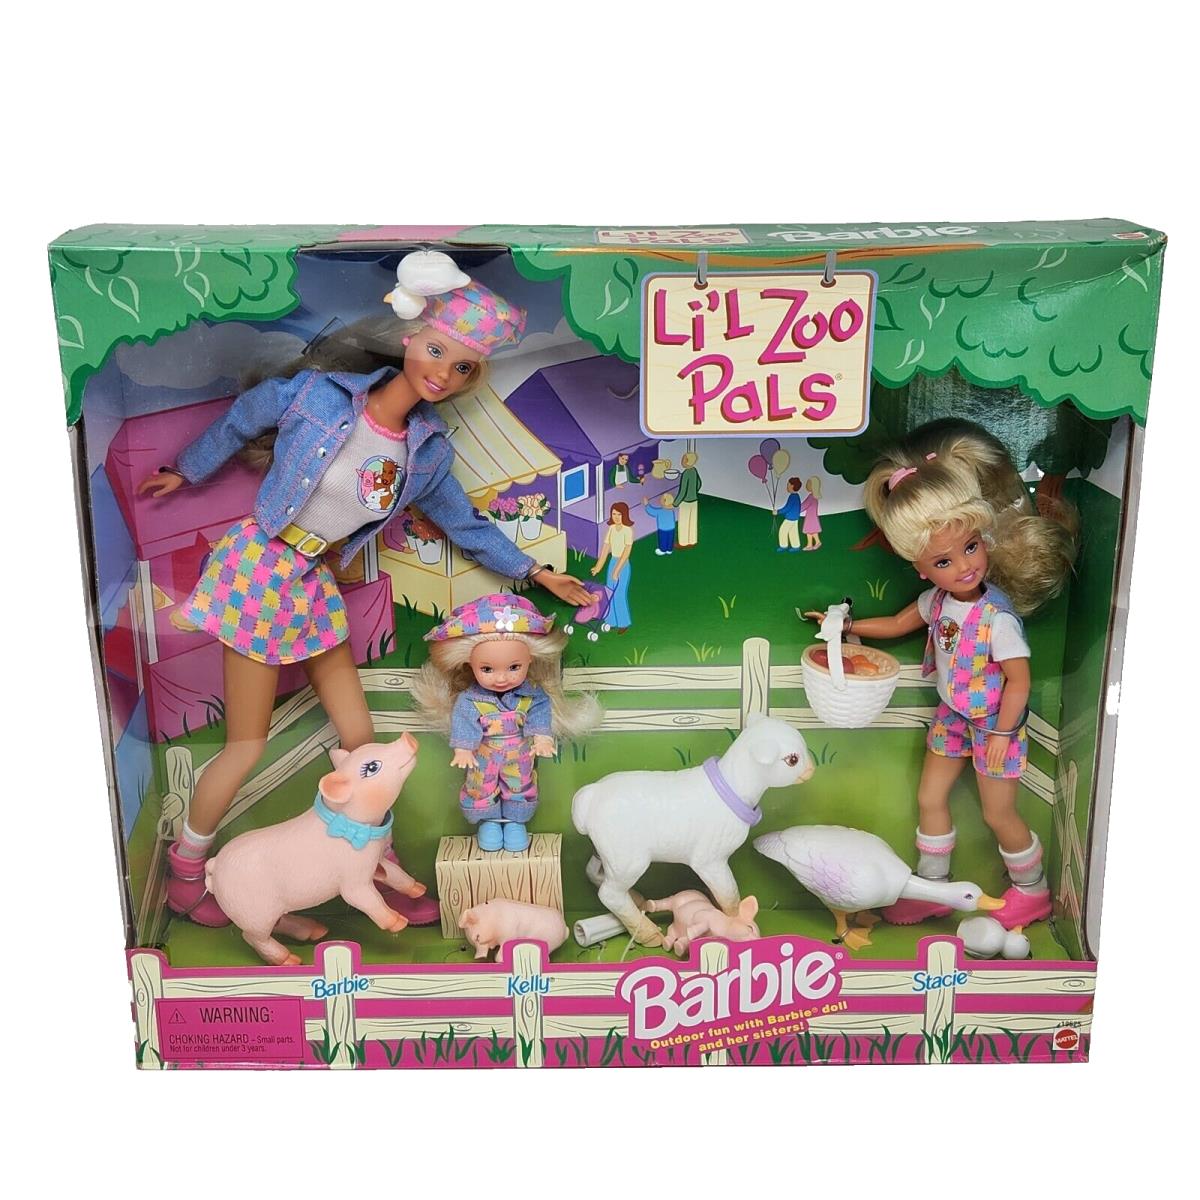 1998 Barbie + Sisters Lil Zoo Pals Farm Animals 19625 Mattel Nrfb